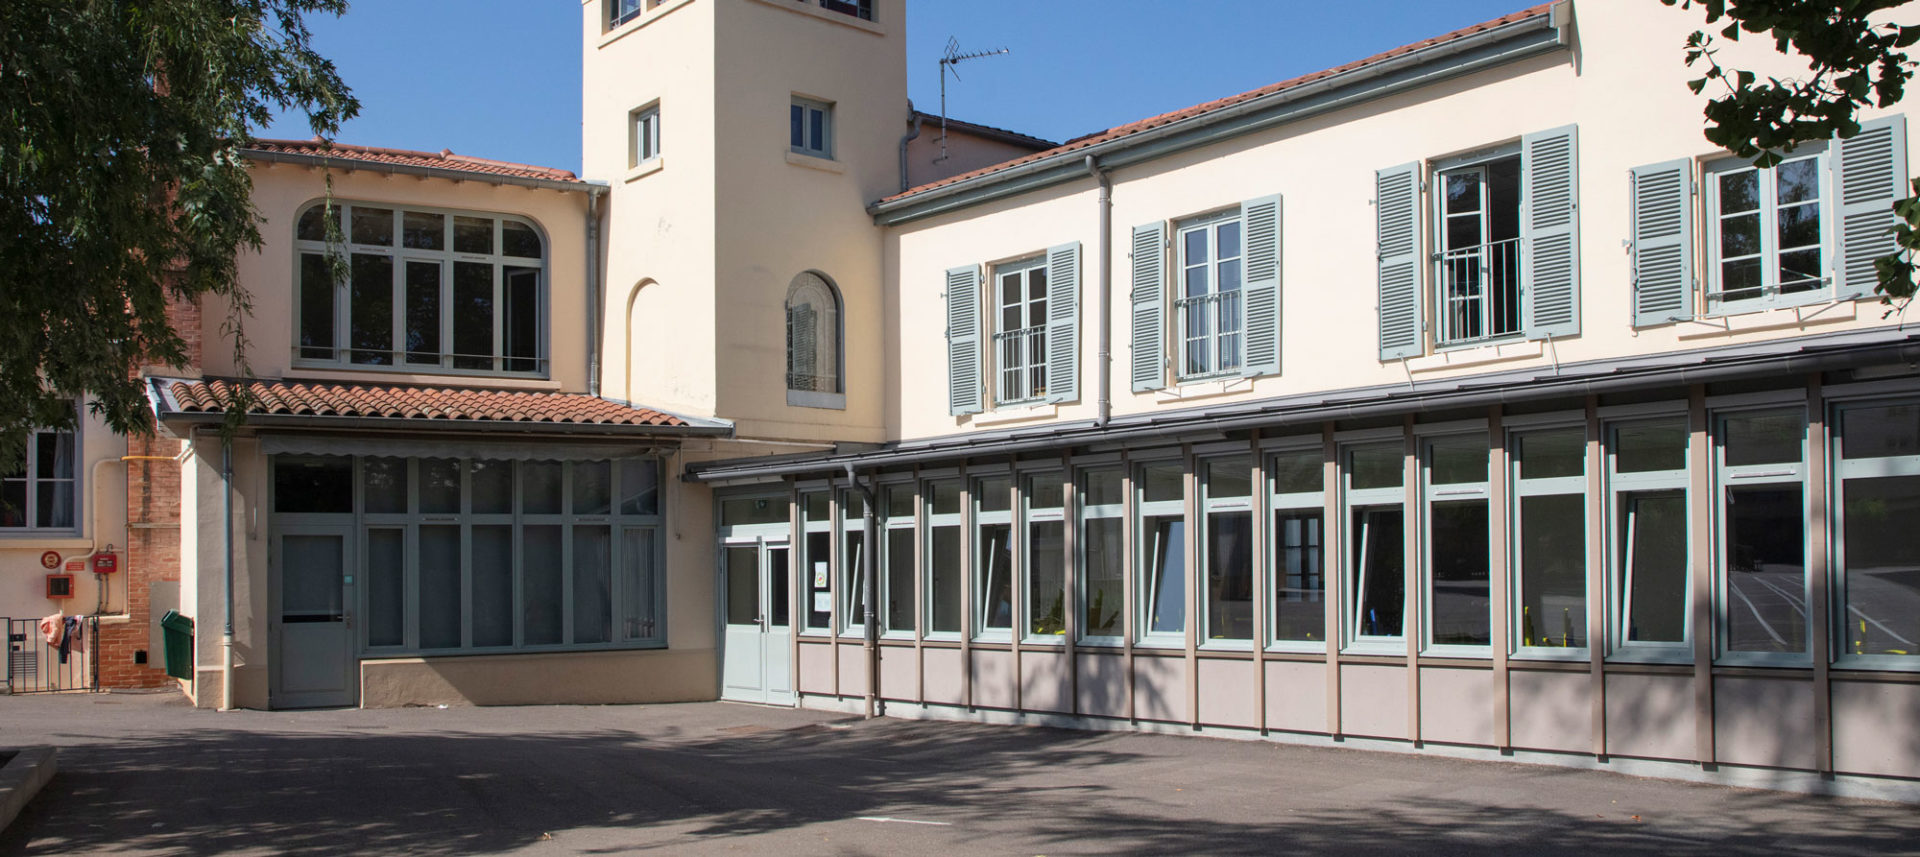 Axe Architecture - Agence d'architecture à Lyon - photo de l’extérieur du projet École la Petite Favorite - réhabilitation